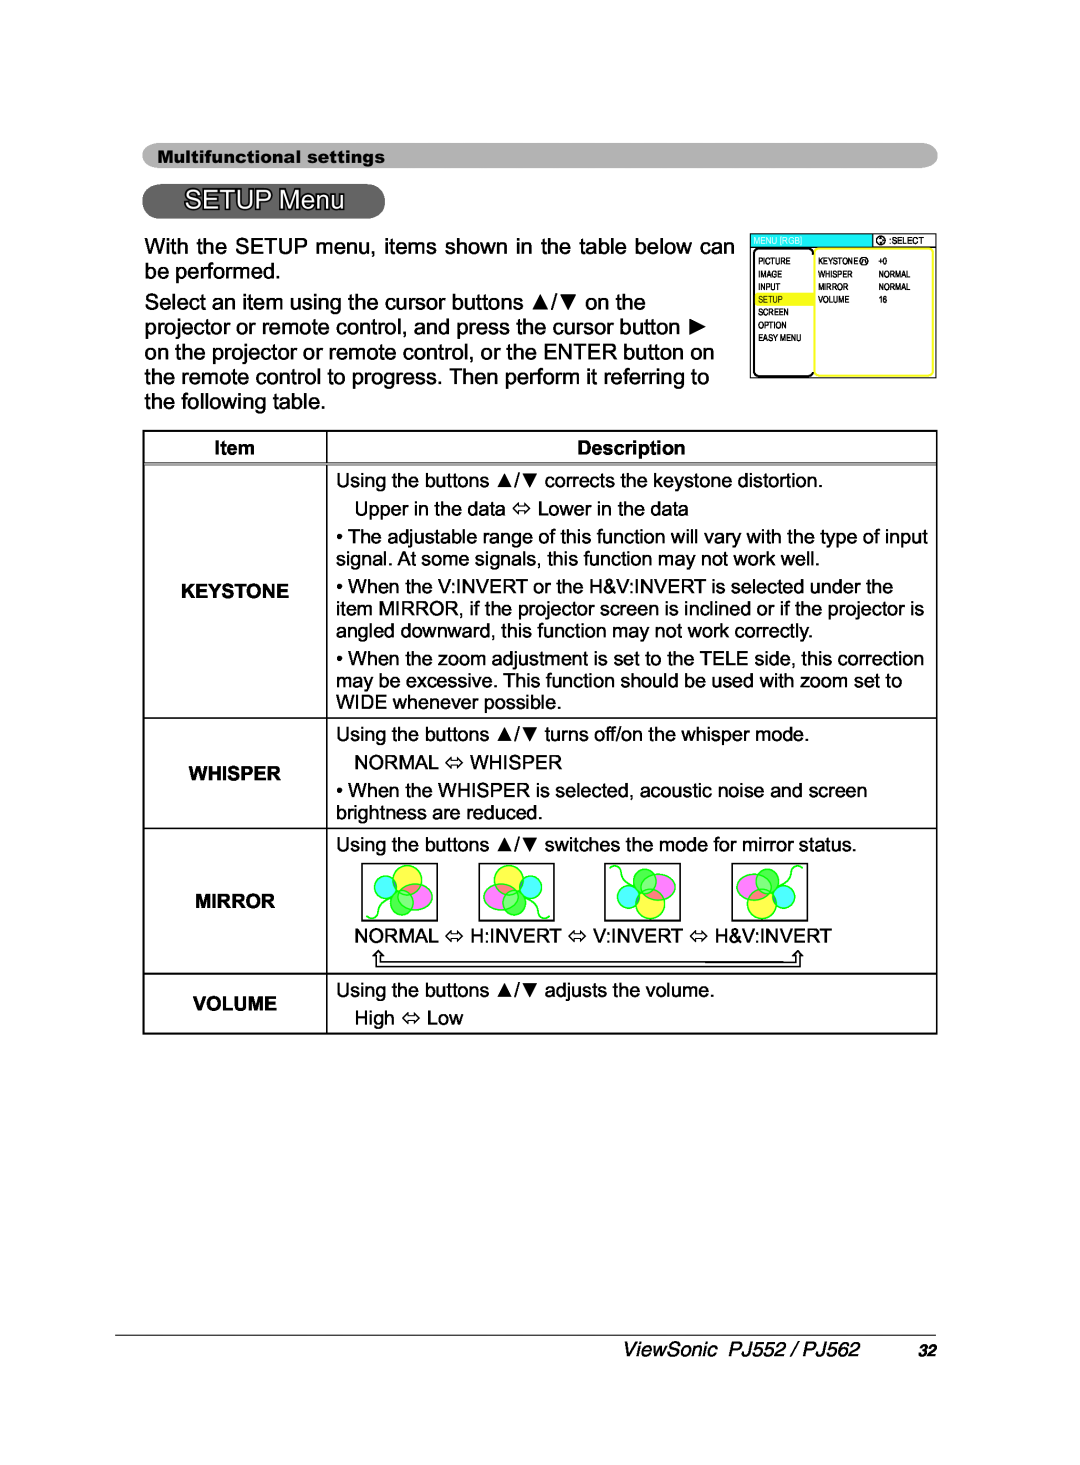 ViewSonic PJ562 manual 67830HQX 